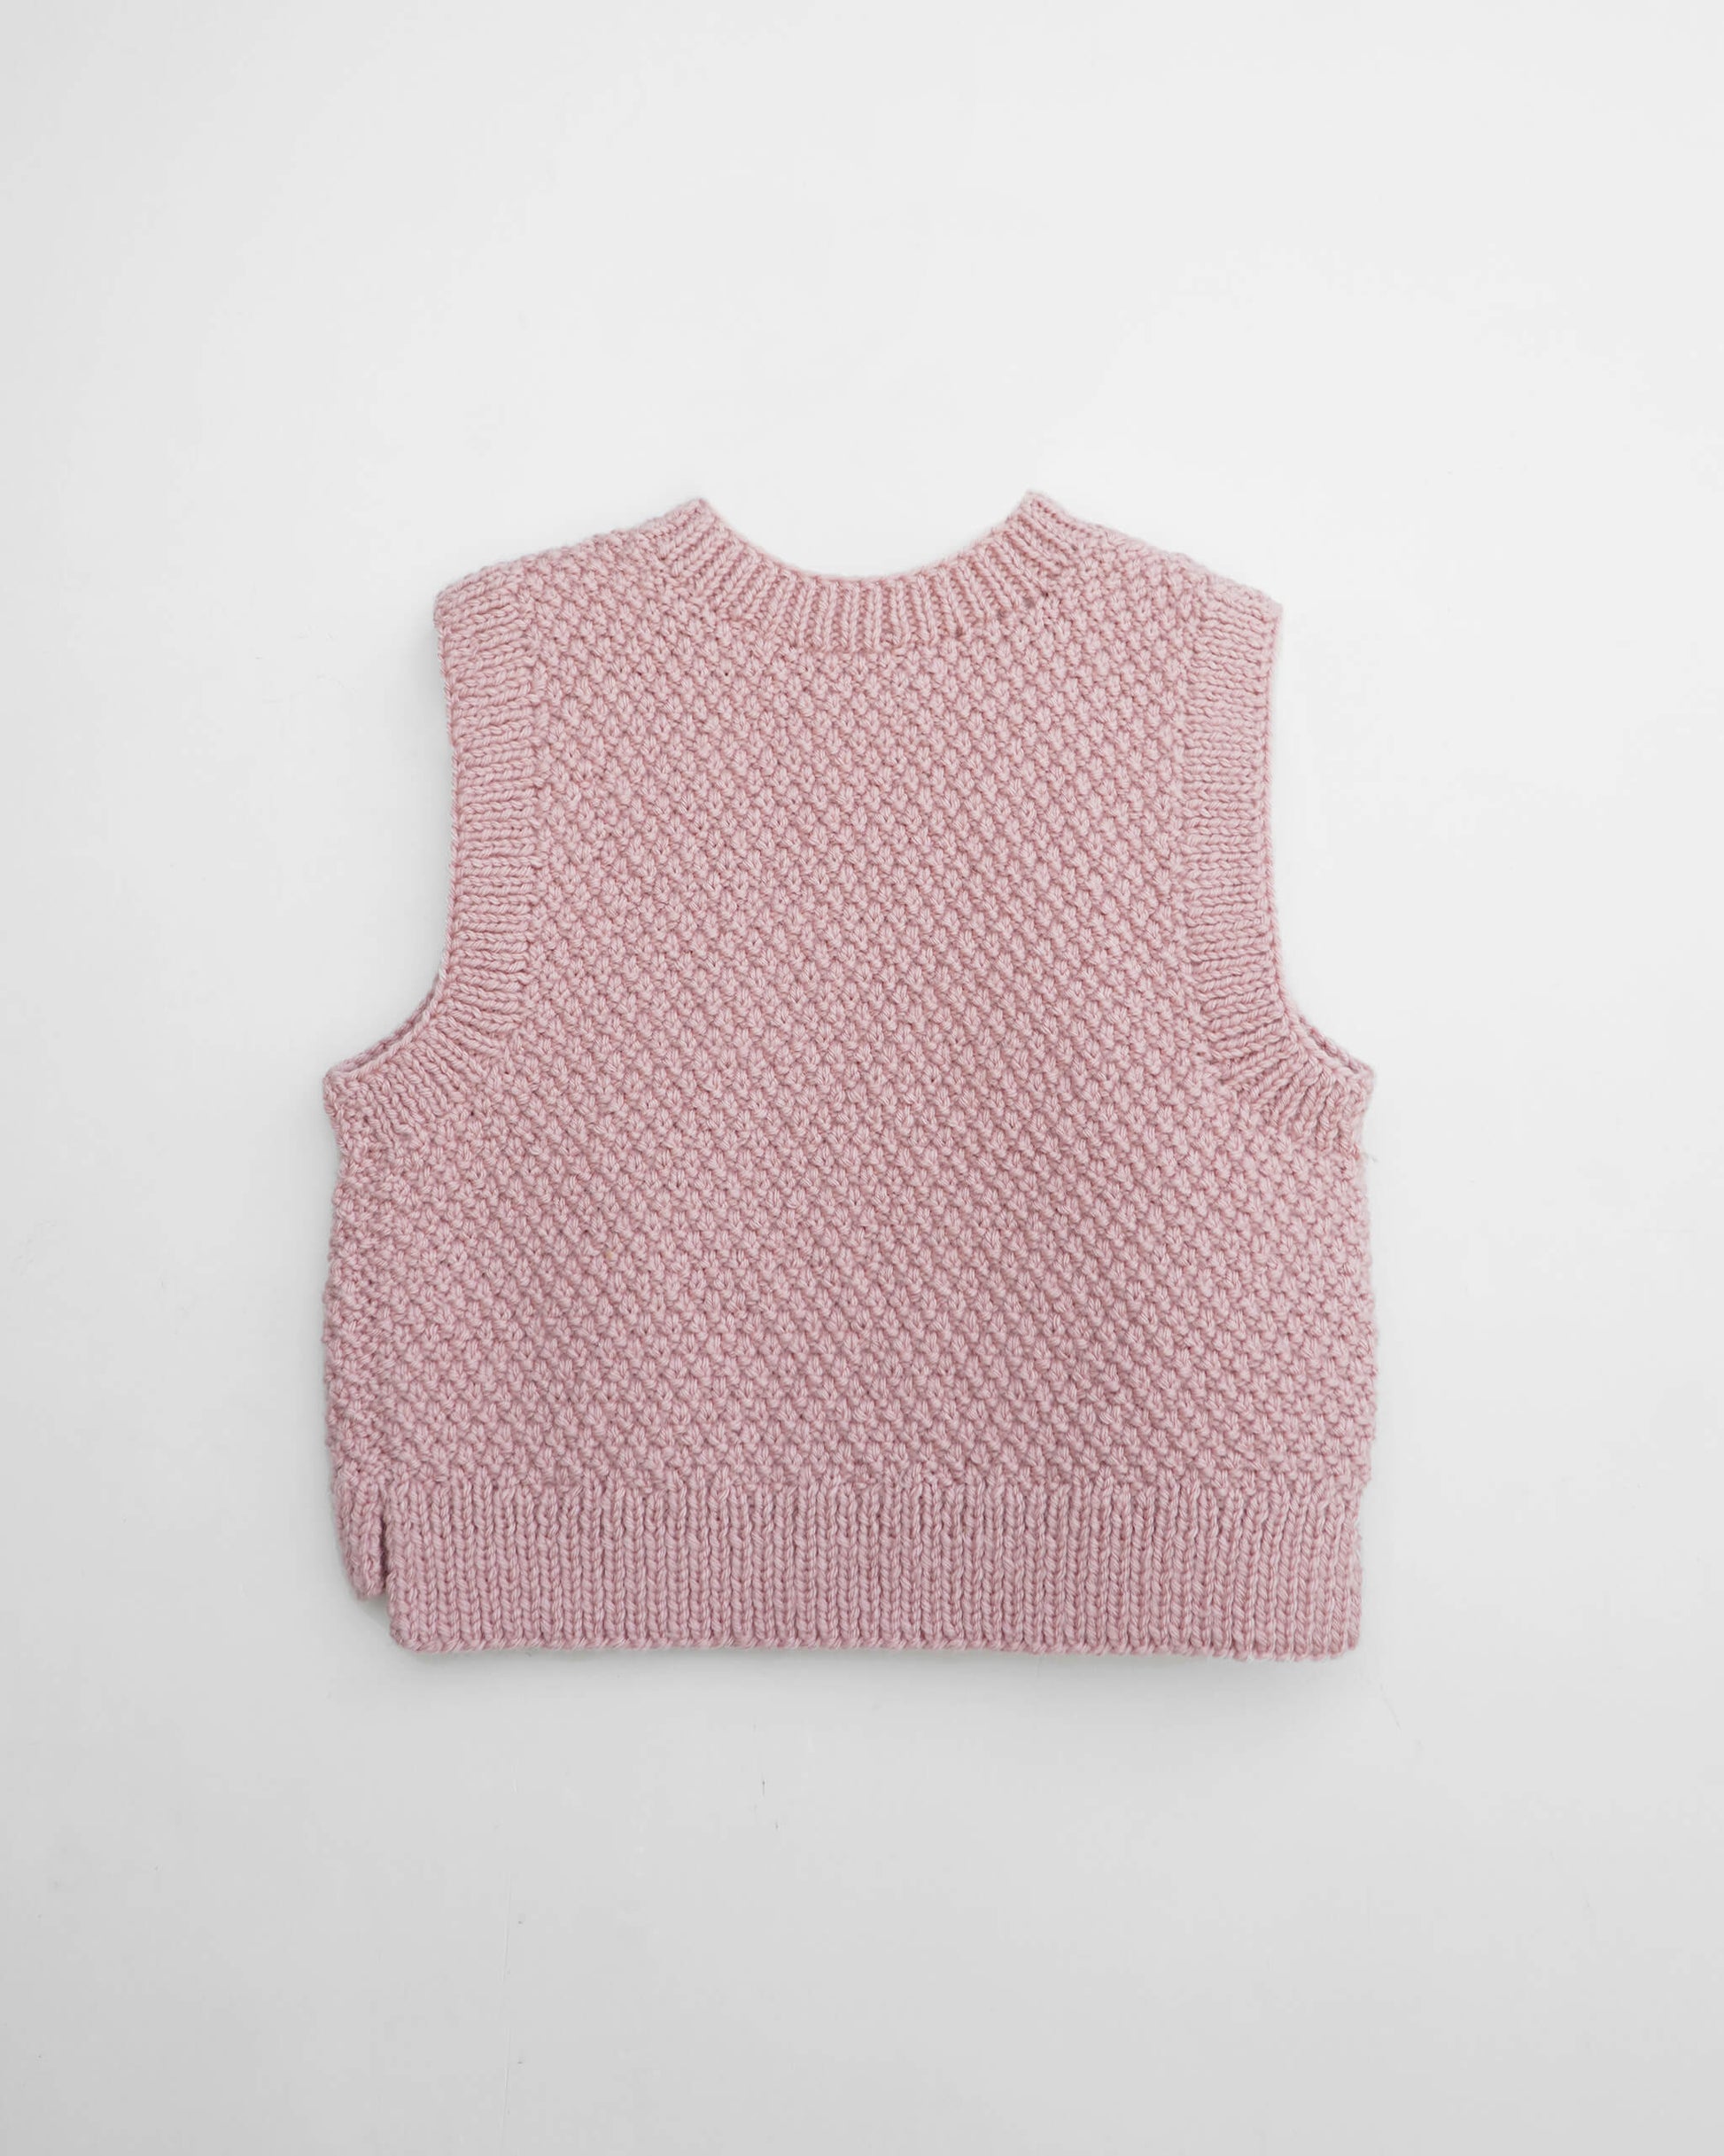 Chunky vest knitting pattern